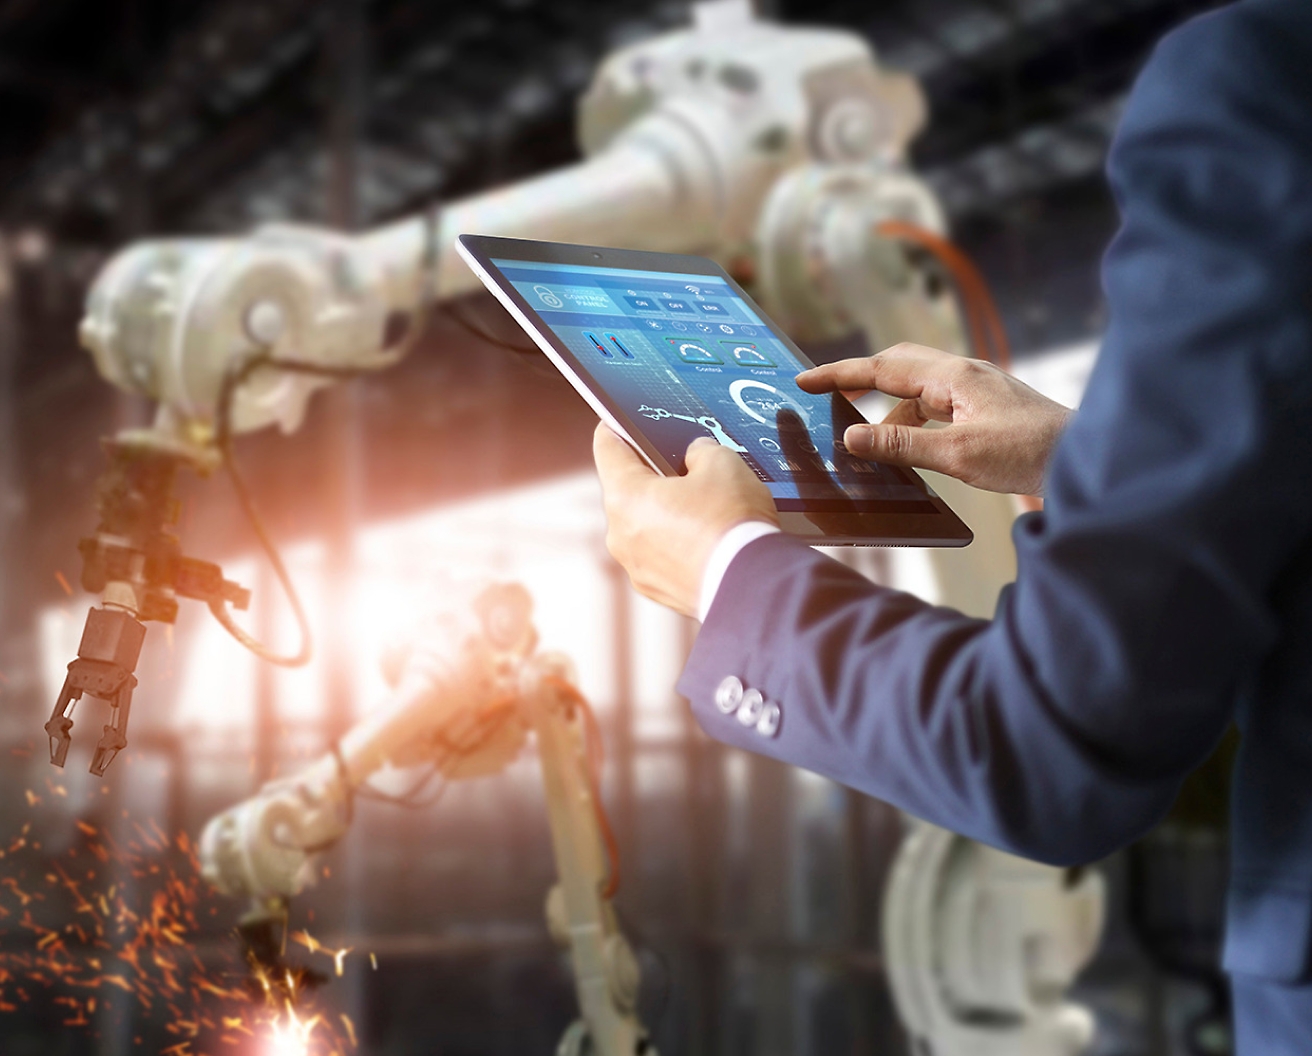 Dans une usine, une personne contrôle des bras robotisés à l'aide d'une tablette, mettant en évidence une technologie d'automatisation avancée.